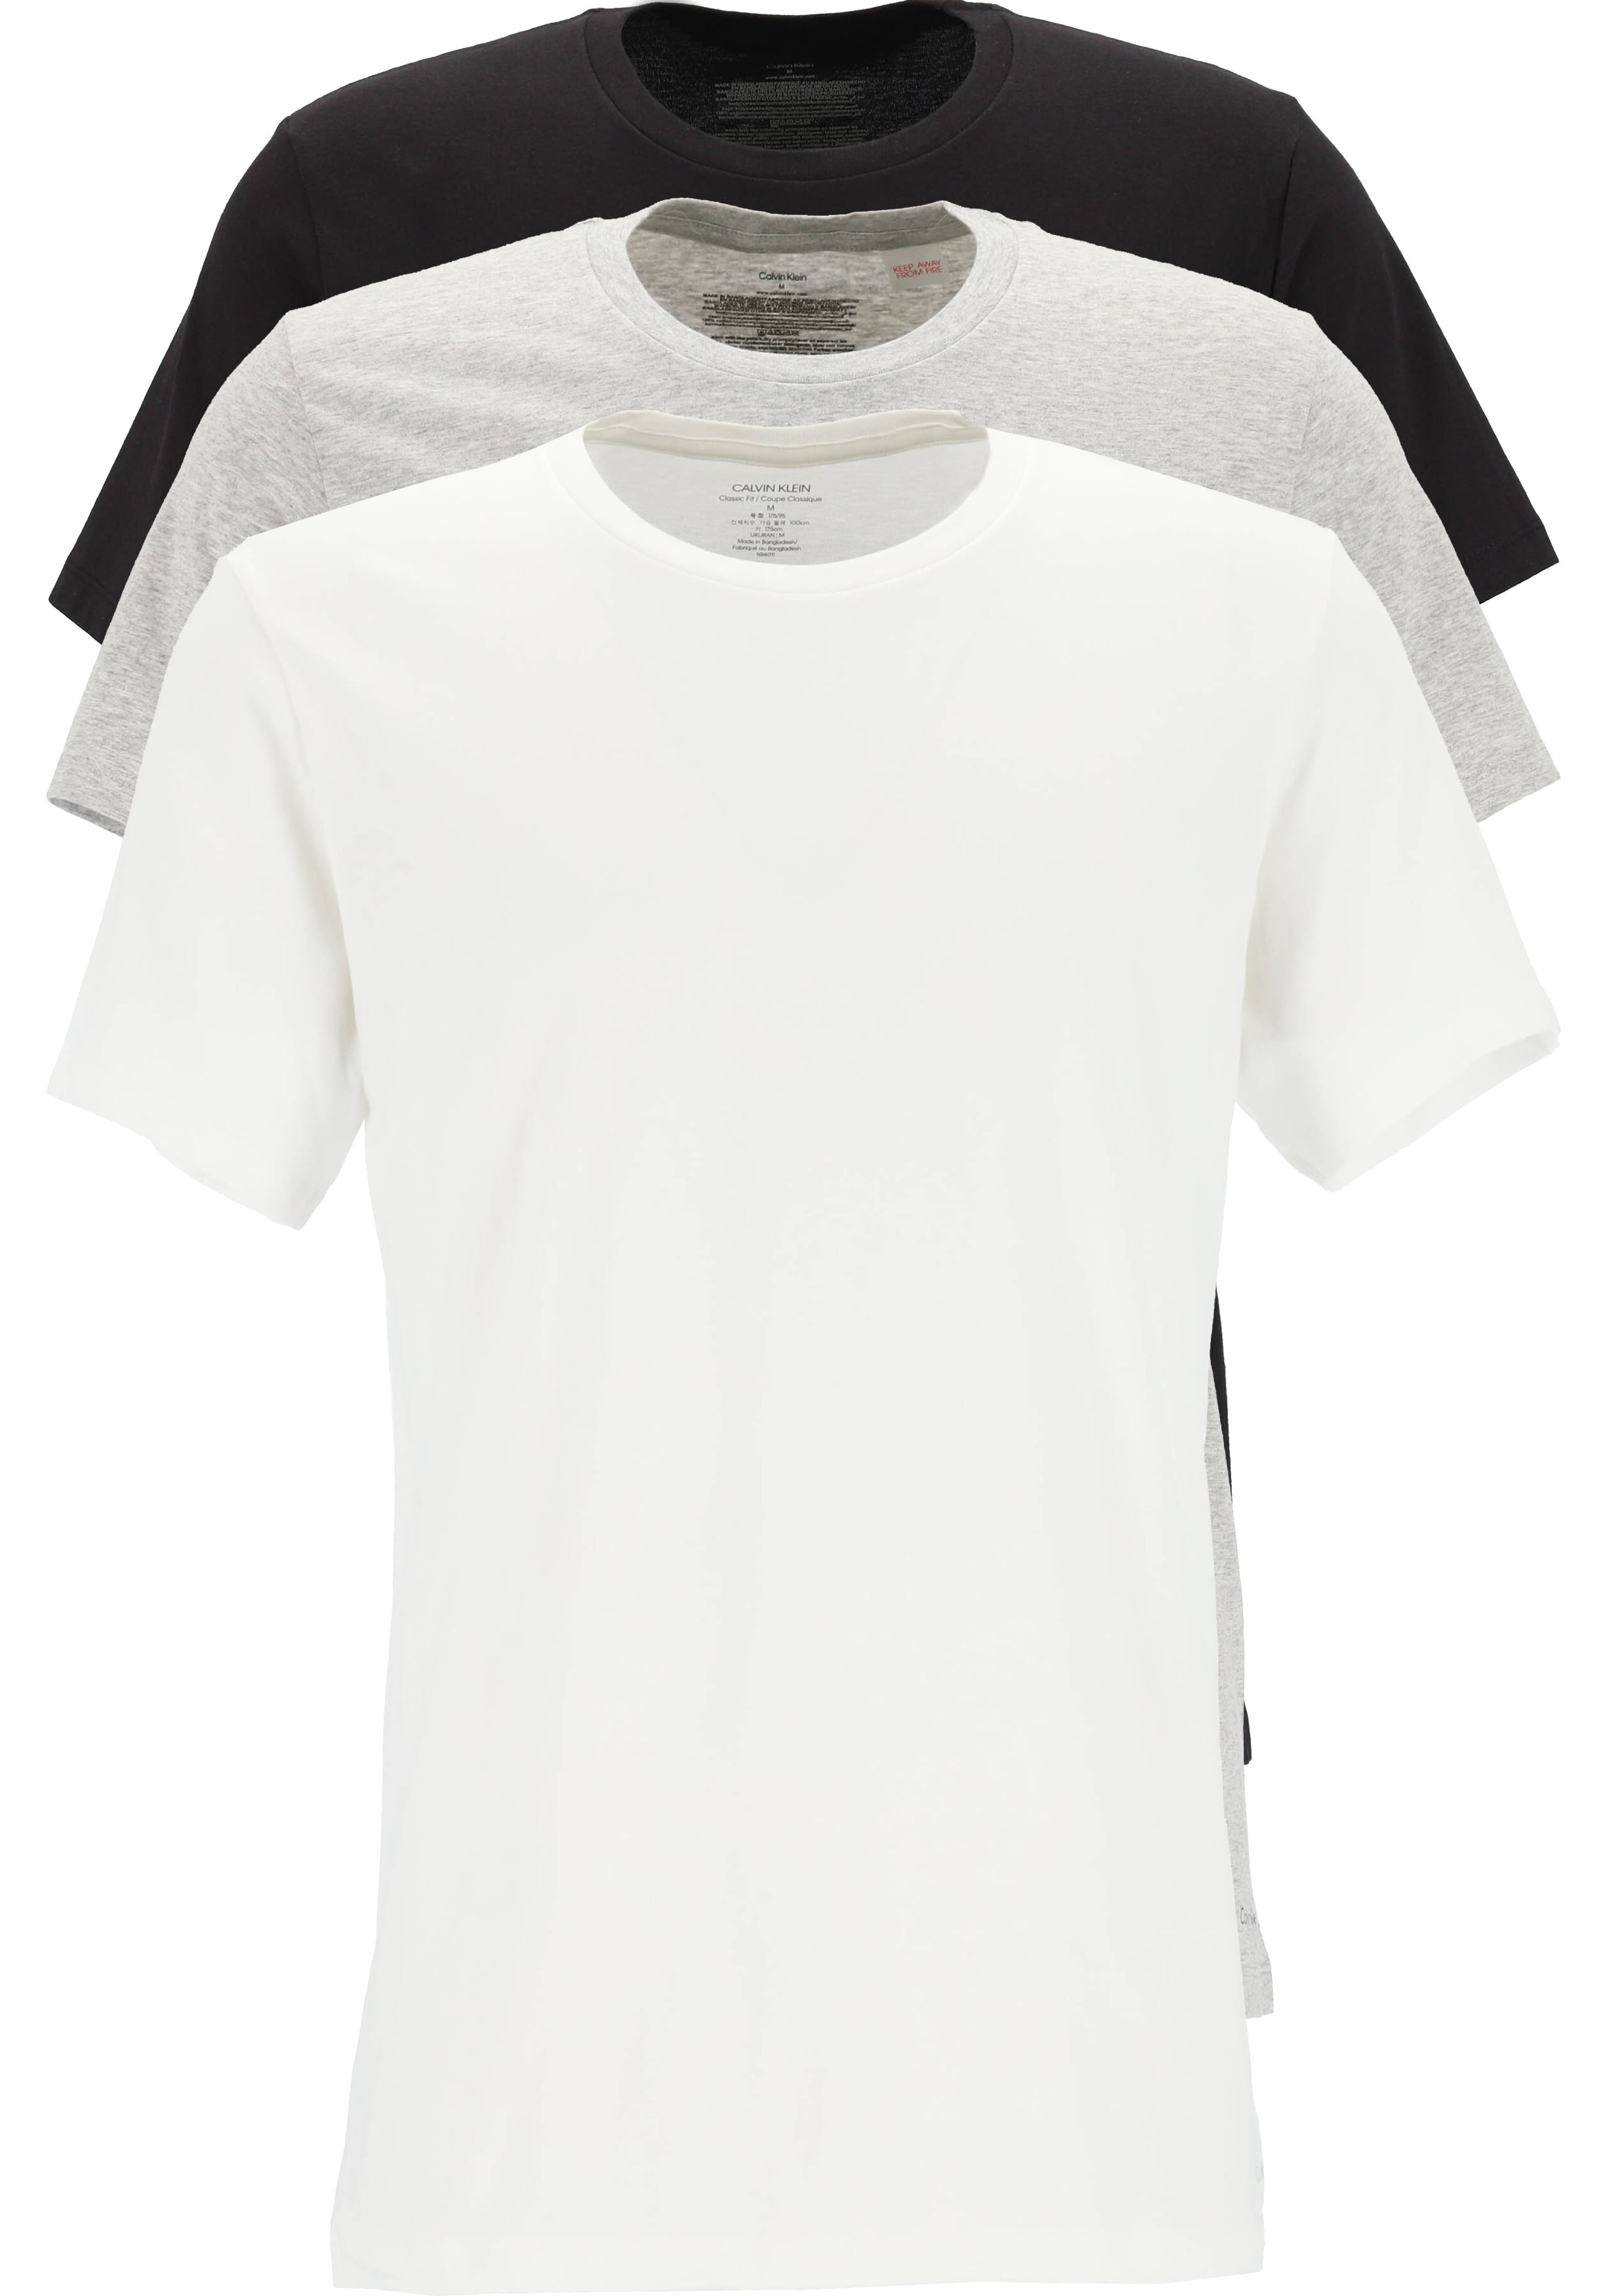 instant werkgelegenheid Grijp Calvin Klein Cotton Classics crew neck T-shirt (3-pack), heren T-shirts...  - SALE tot 50% korting